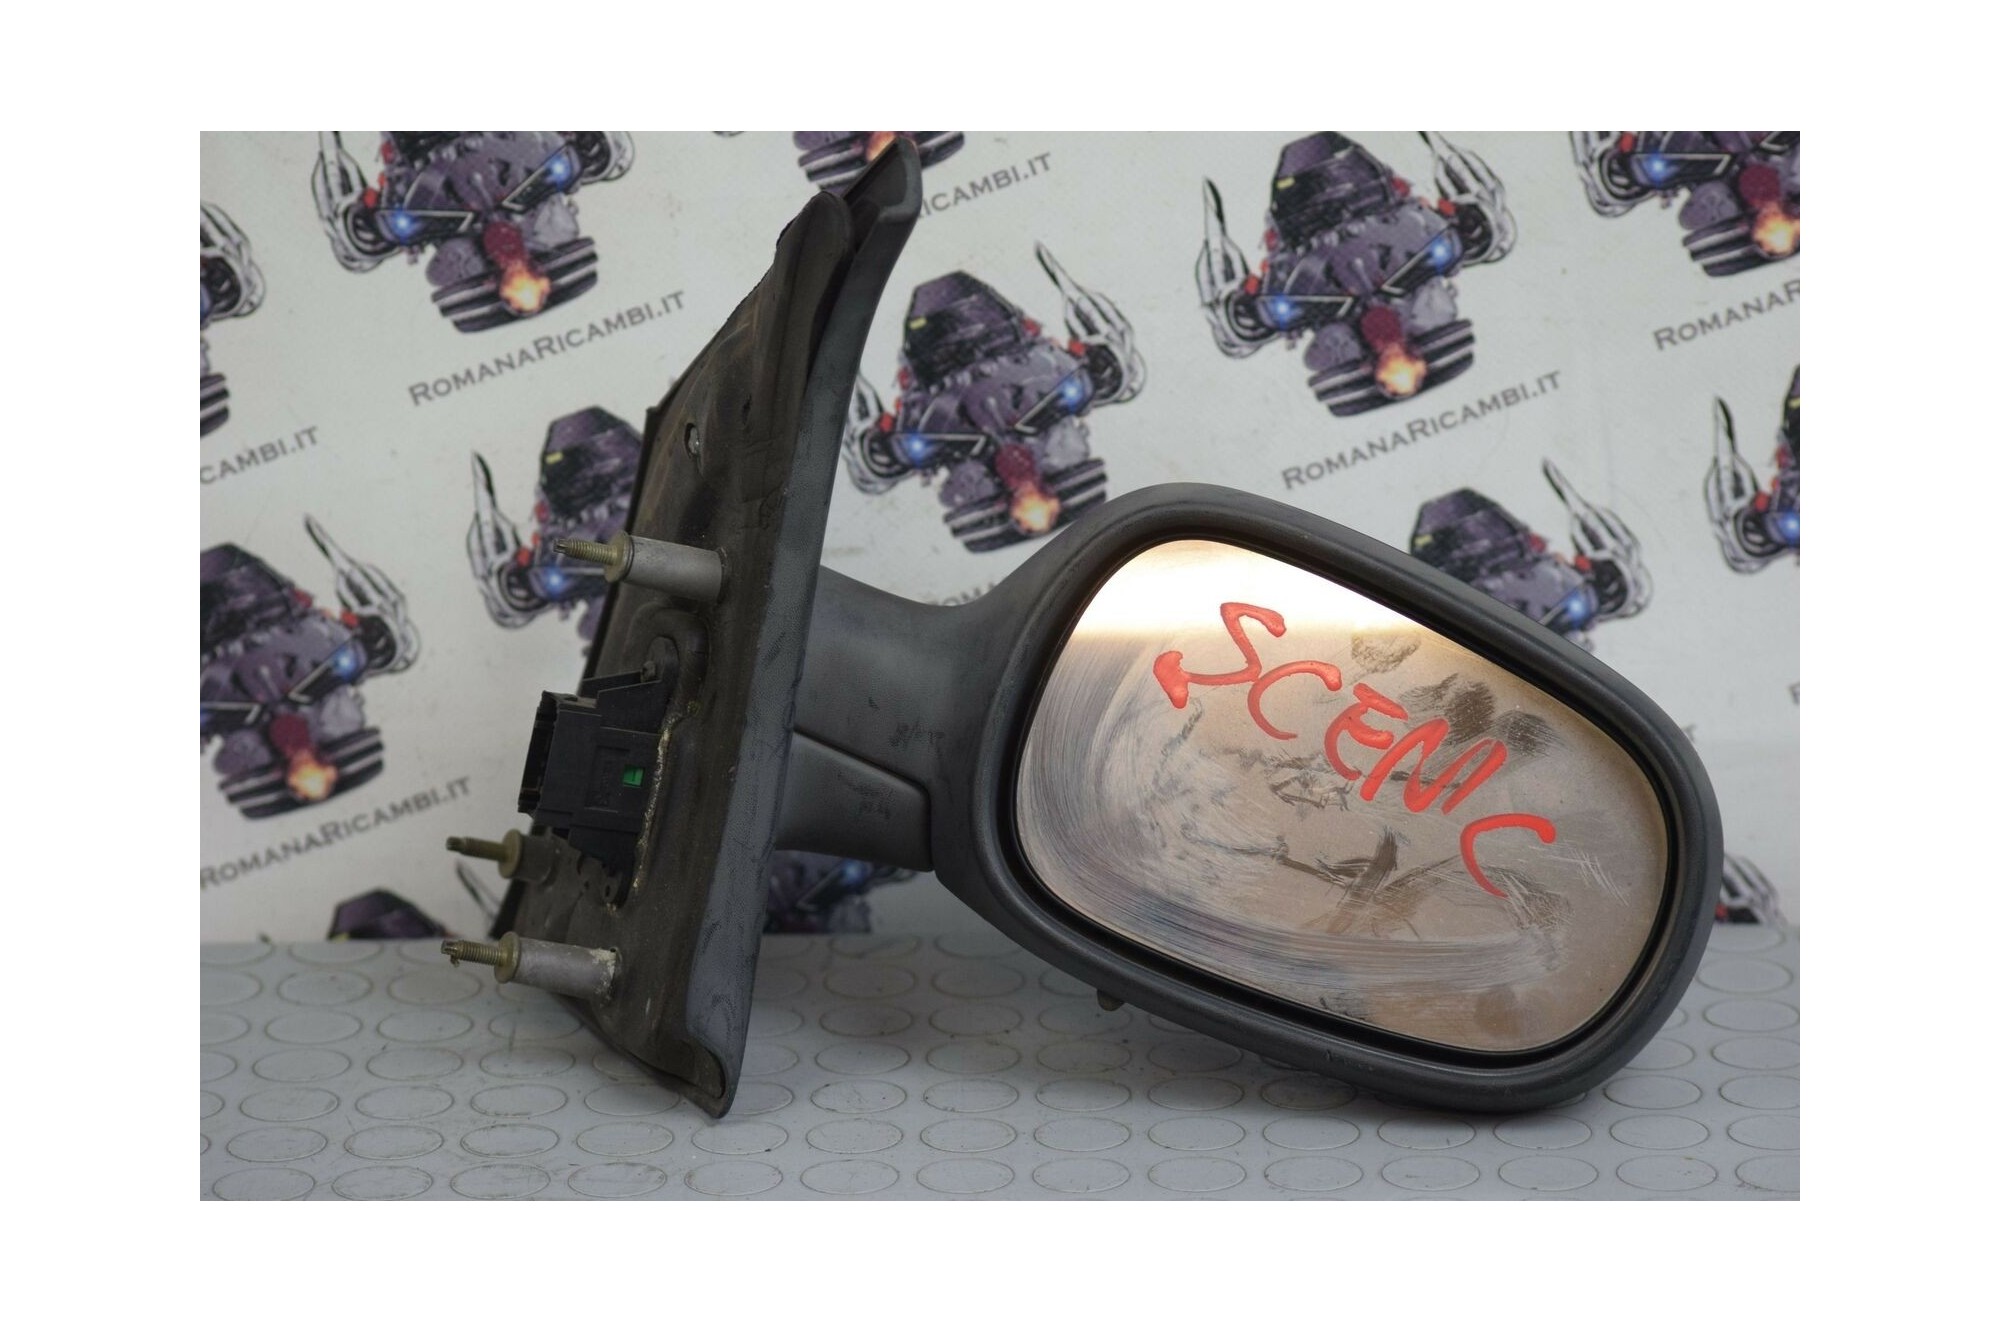 Specchio retrovisore Destro DX Renault Scenic I dal 1996 al 1999 Cod: E1010461  2411111137918